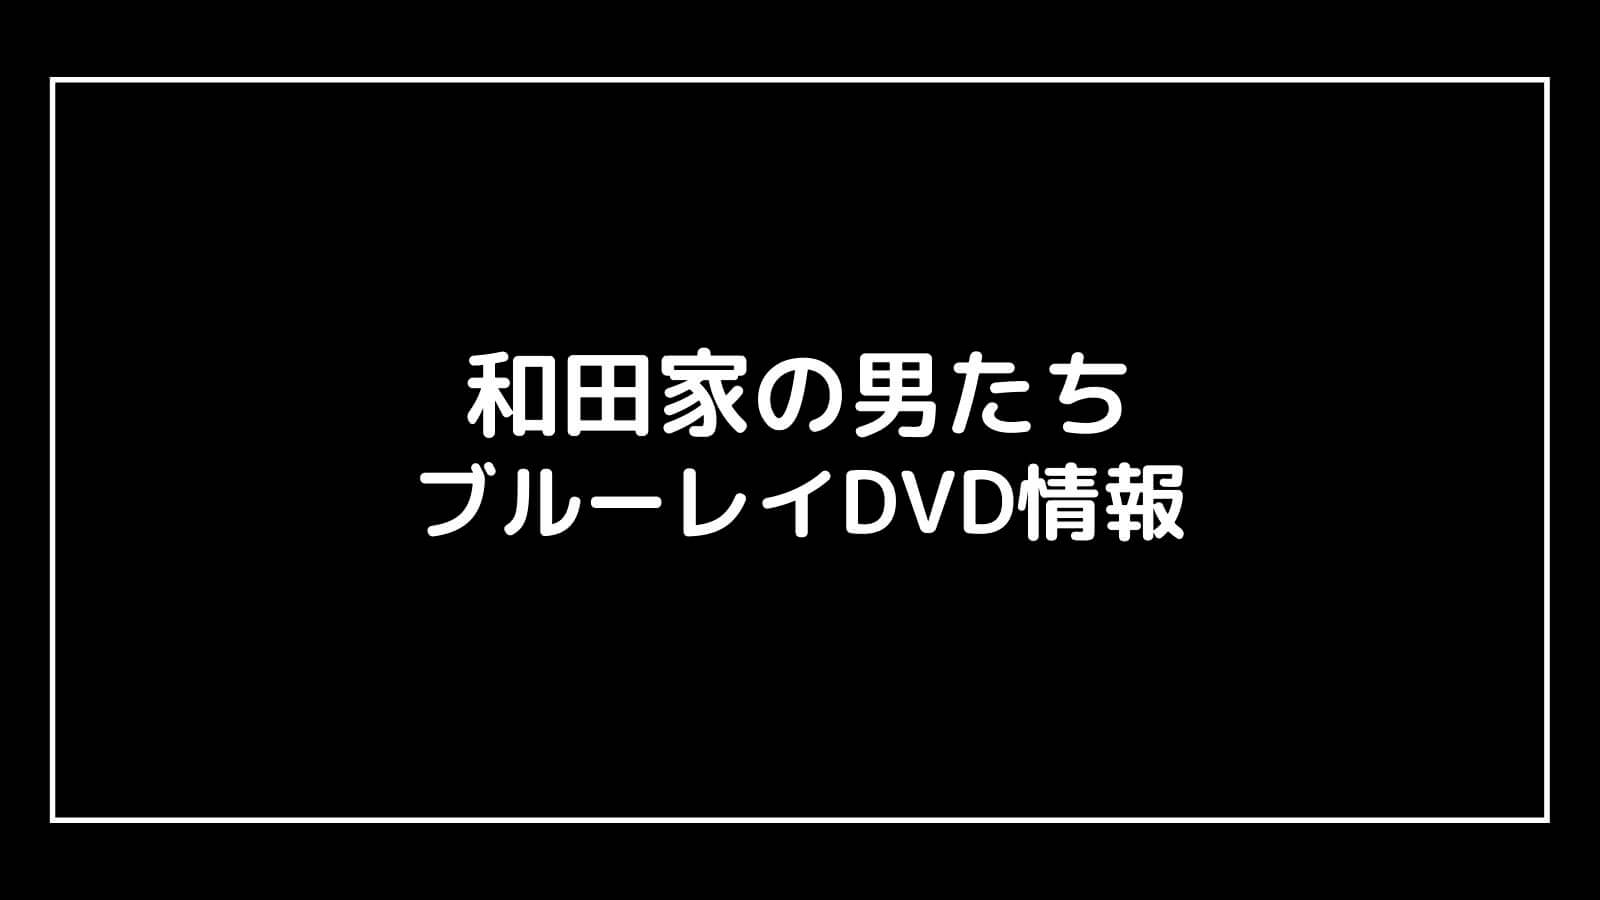 【DVD予約速報】和田家の男たちの円盤発売日と特典情報まとめ